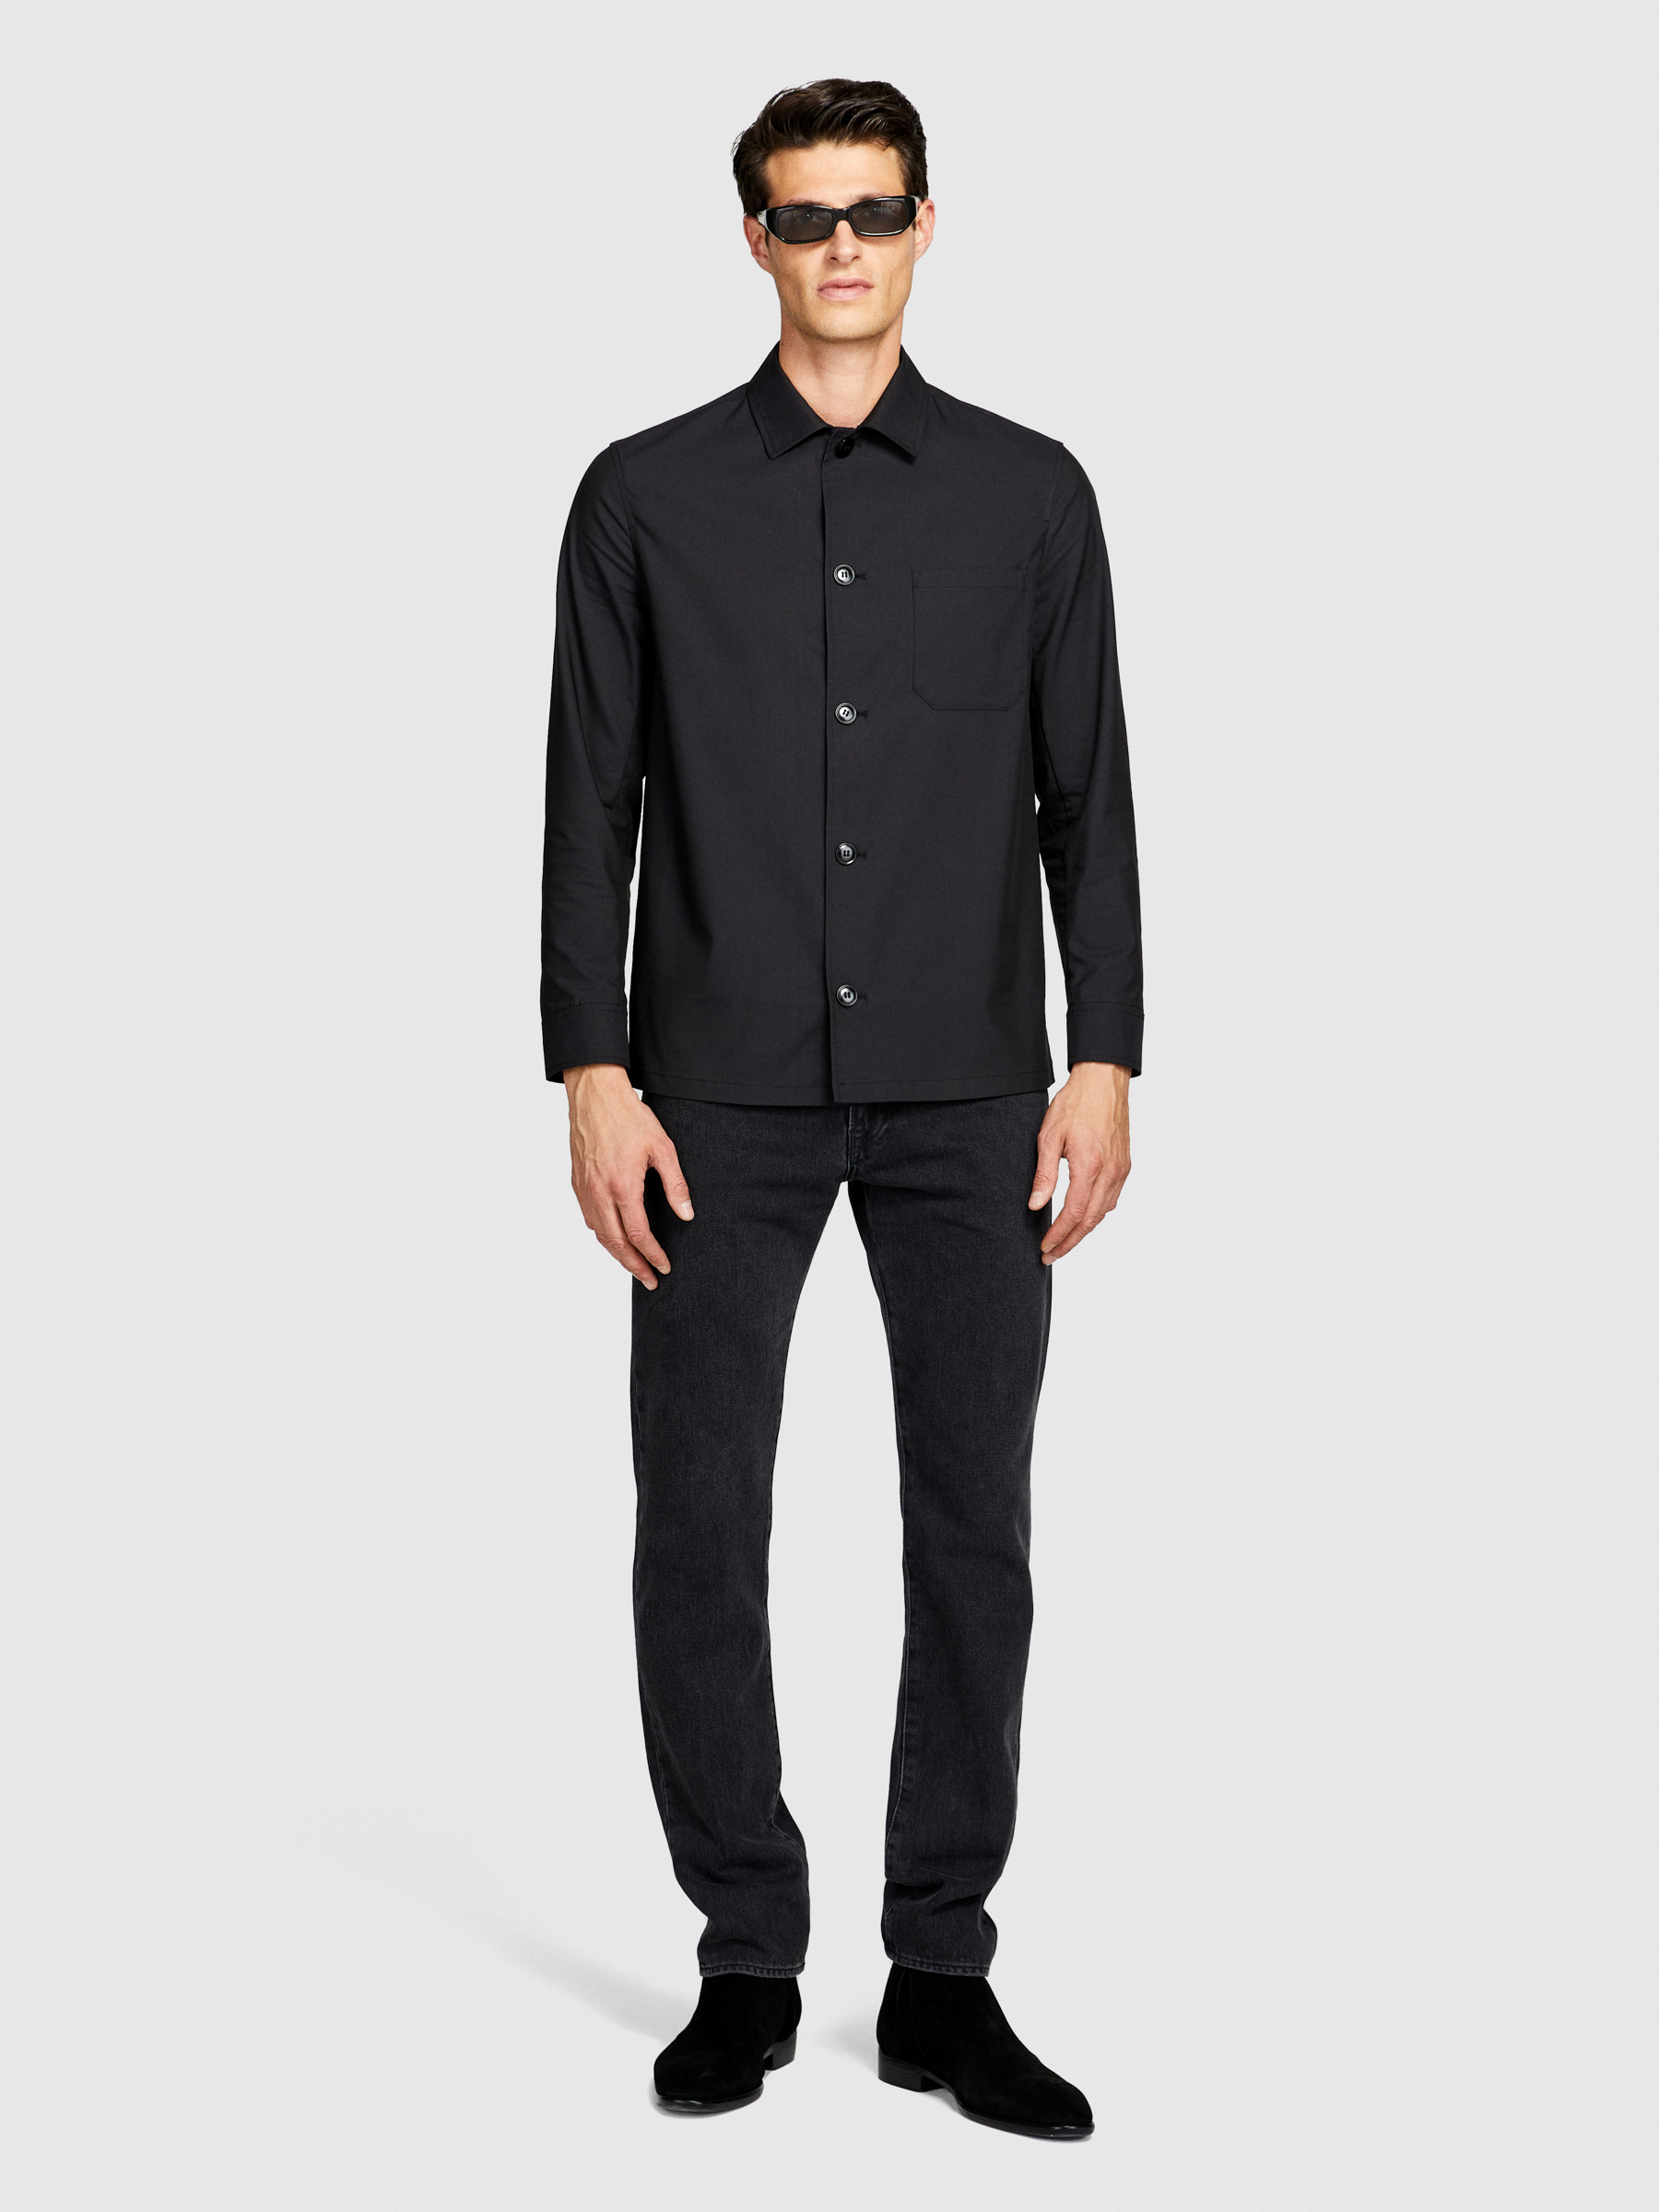 Sisley - Technical Shirt Jacket, Man, Black, Size: XL